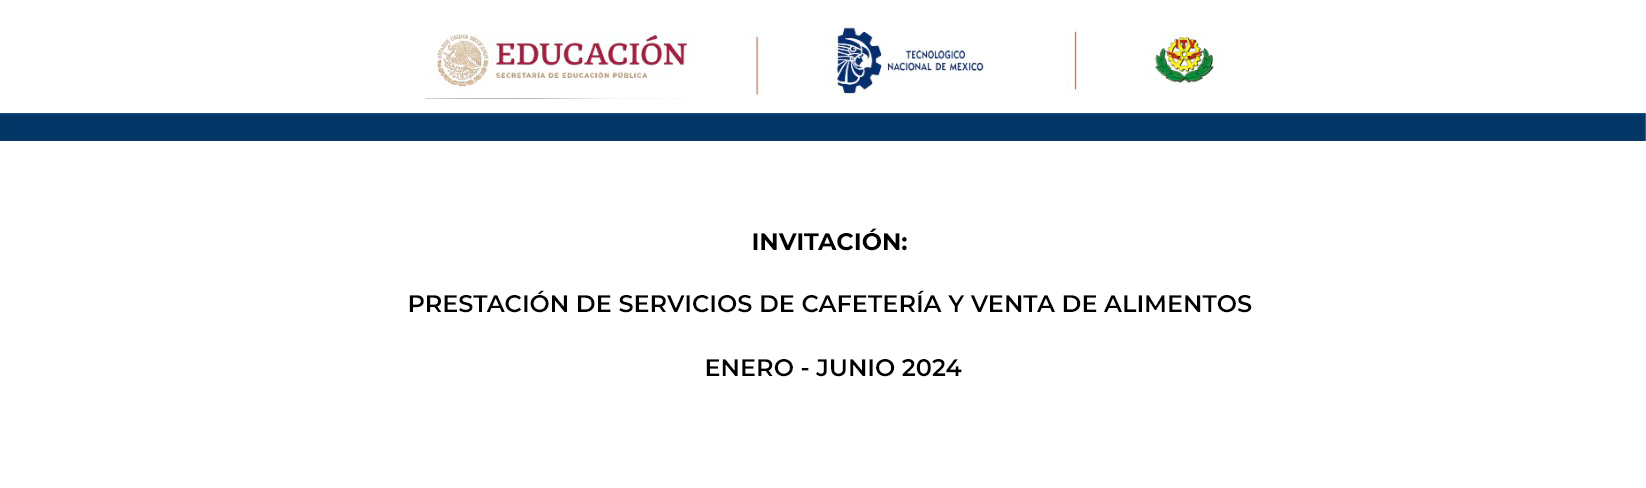 Invitación Servicio de Cafetería Enero 2024